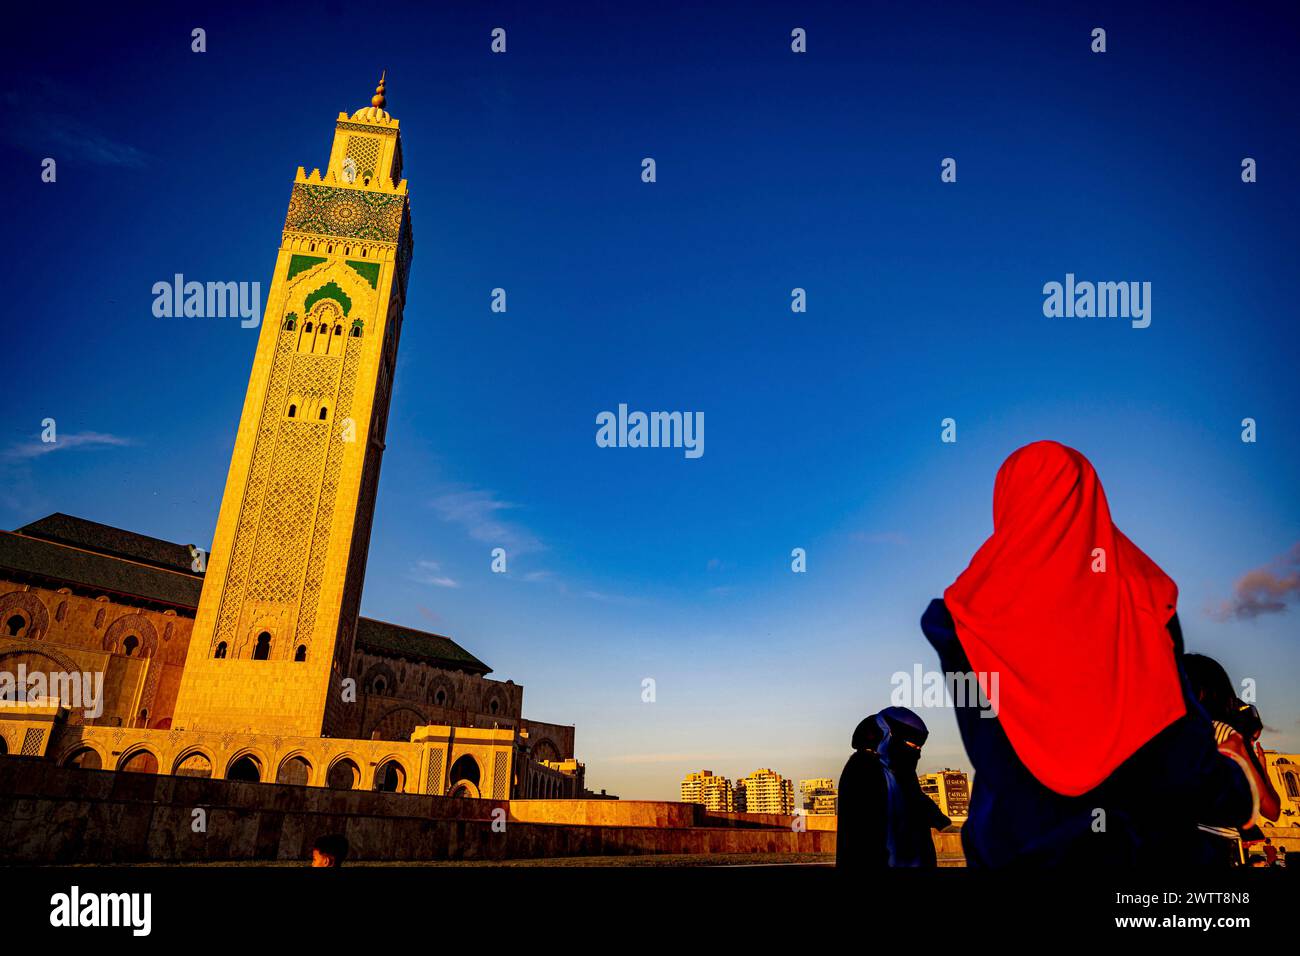 Eine Person in einem leuchtend roten Kopftuch blickt bei Sonnenuntergang auf einen majestätischen Moschee-Turm vor einem tiefblauen Himmel. Stockfoto